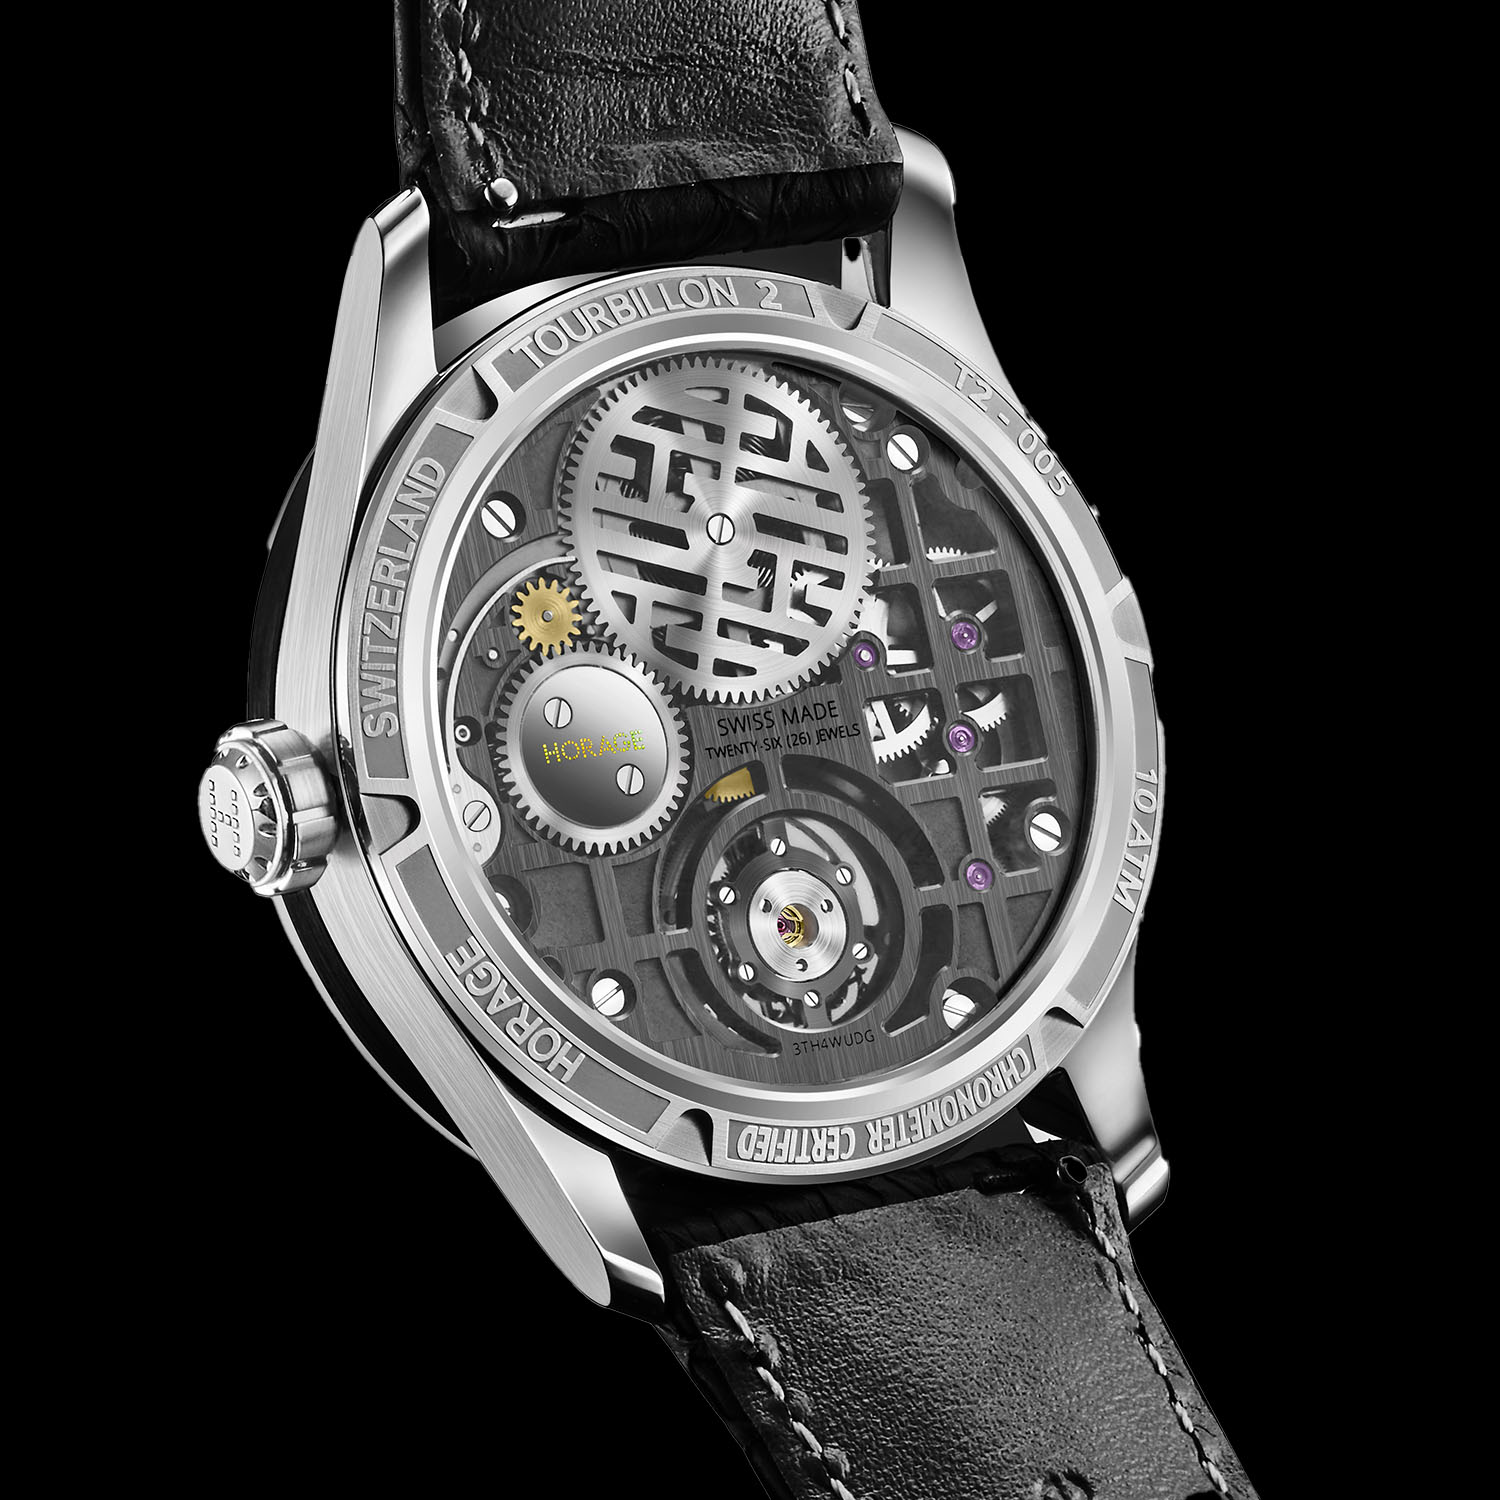 Компания Horage представляет обновленные часы Tourbillon 2